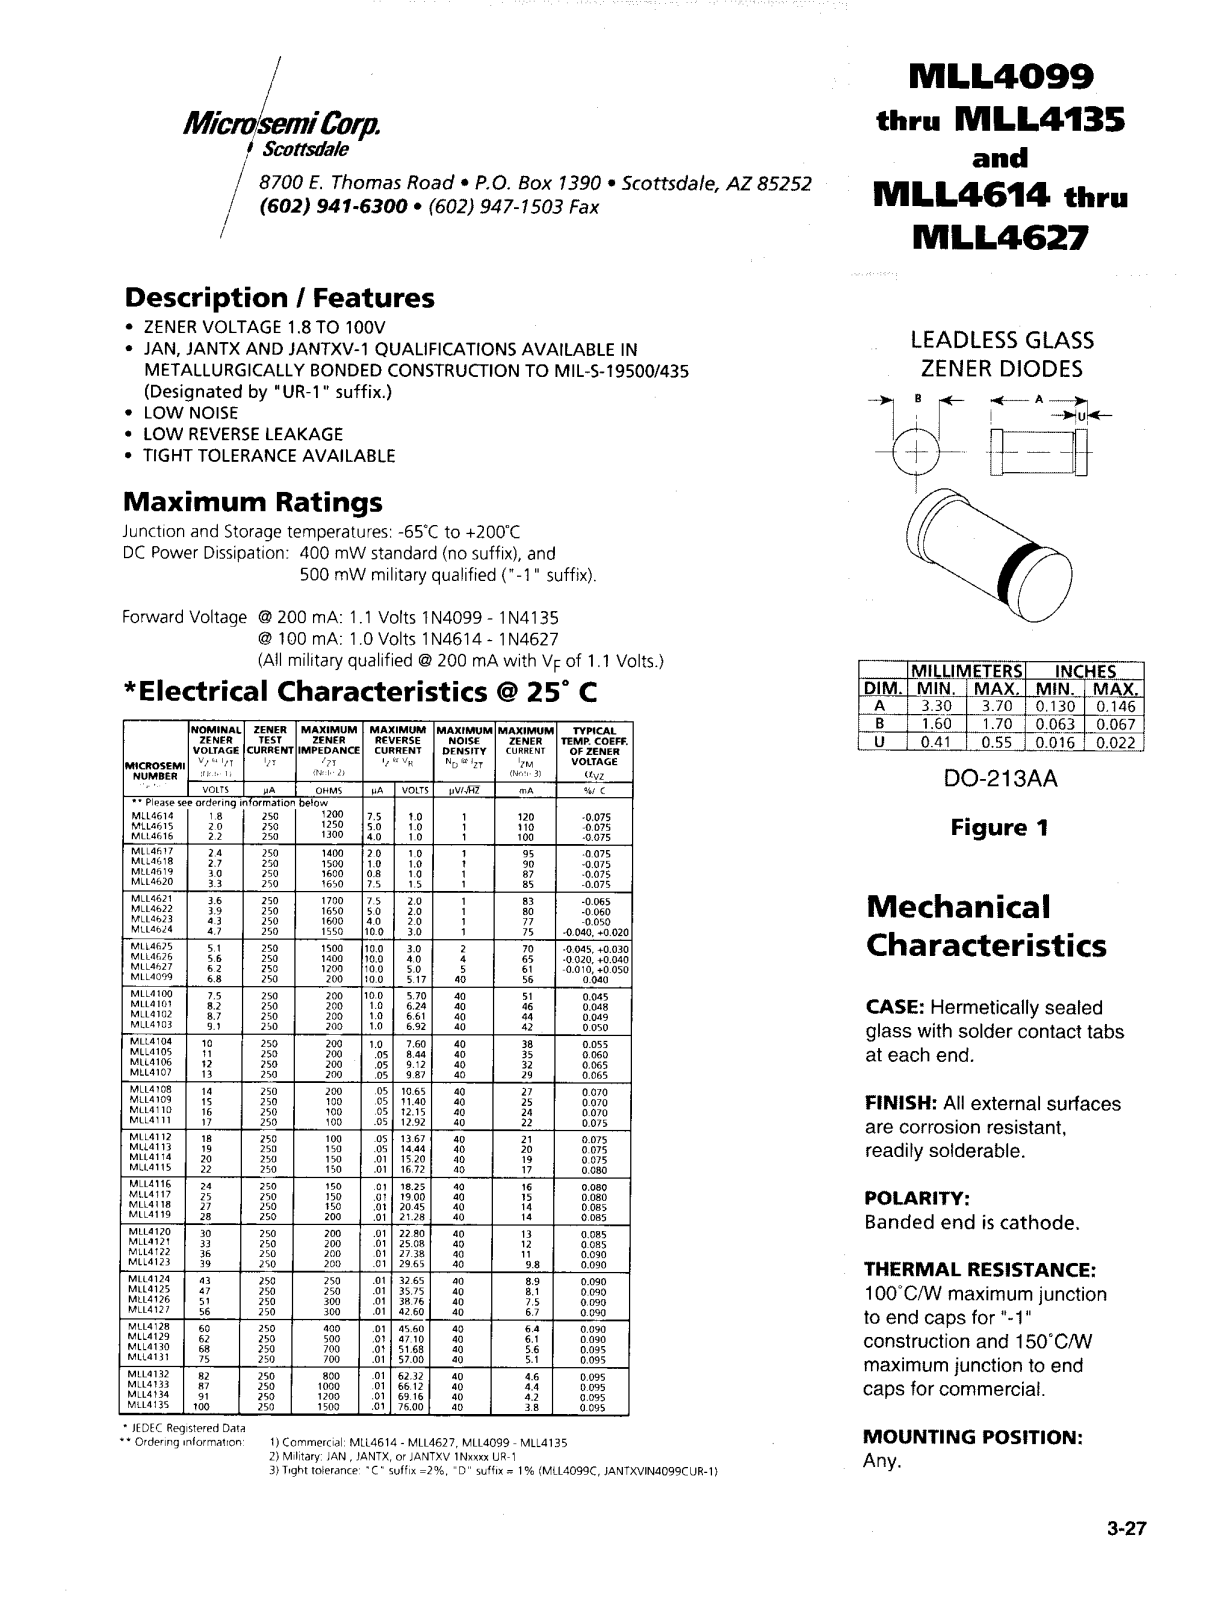 Microsemi Corporation MLL4621-1, MLL4622, MLL4622-1, MLL4621, MLL4618 Datasheet